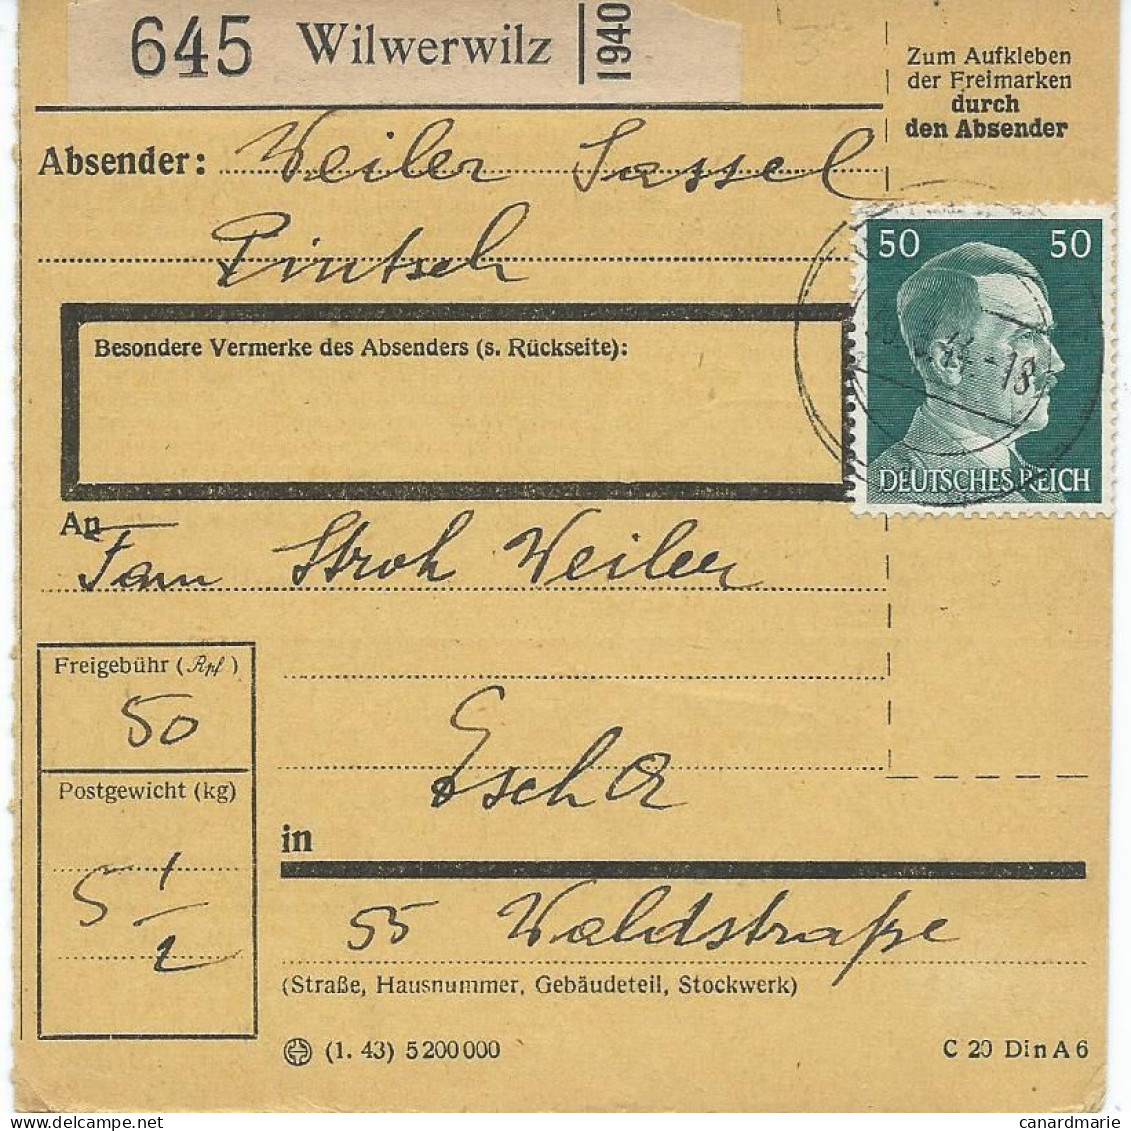 BULLETIN DE COLIS POSTAL 1944 AVEC ETIQUETTE DE WILWERWILZ - 1940-1944 Occupation Allemande